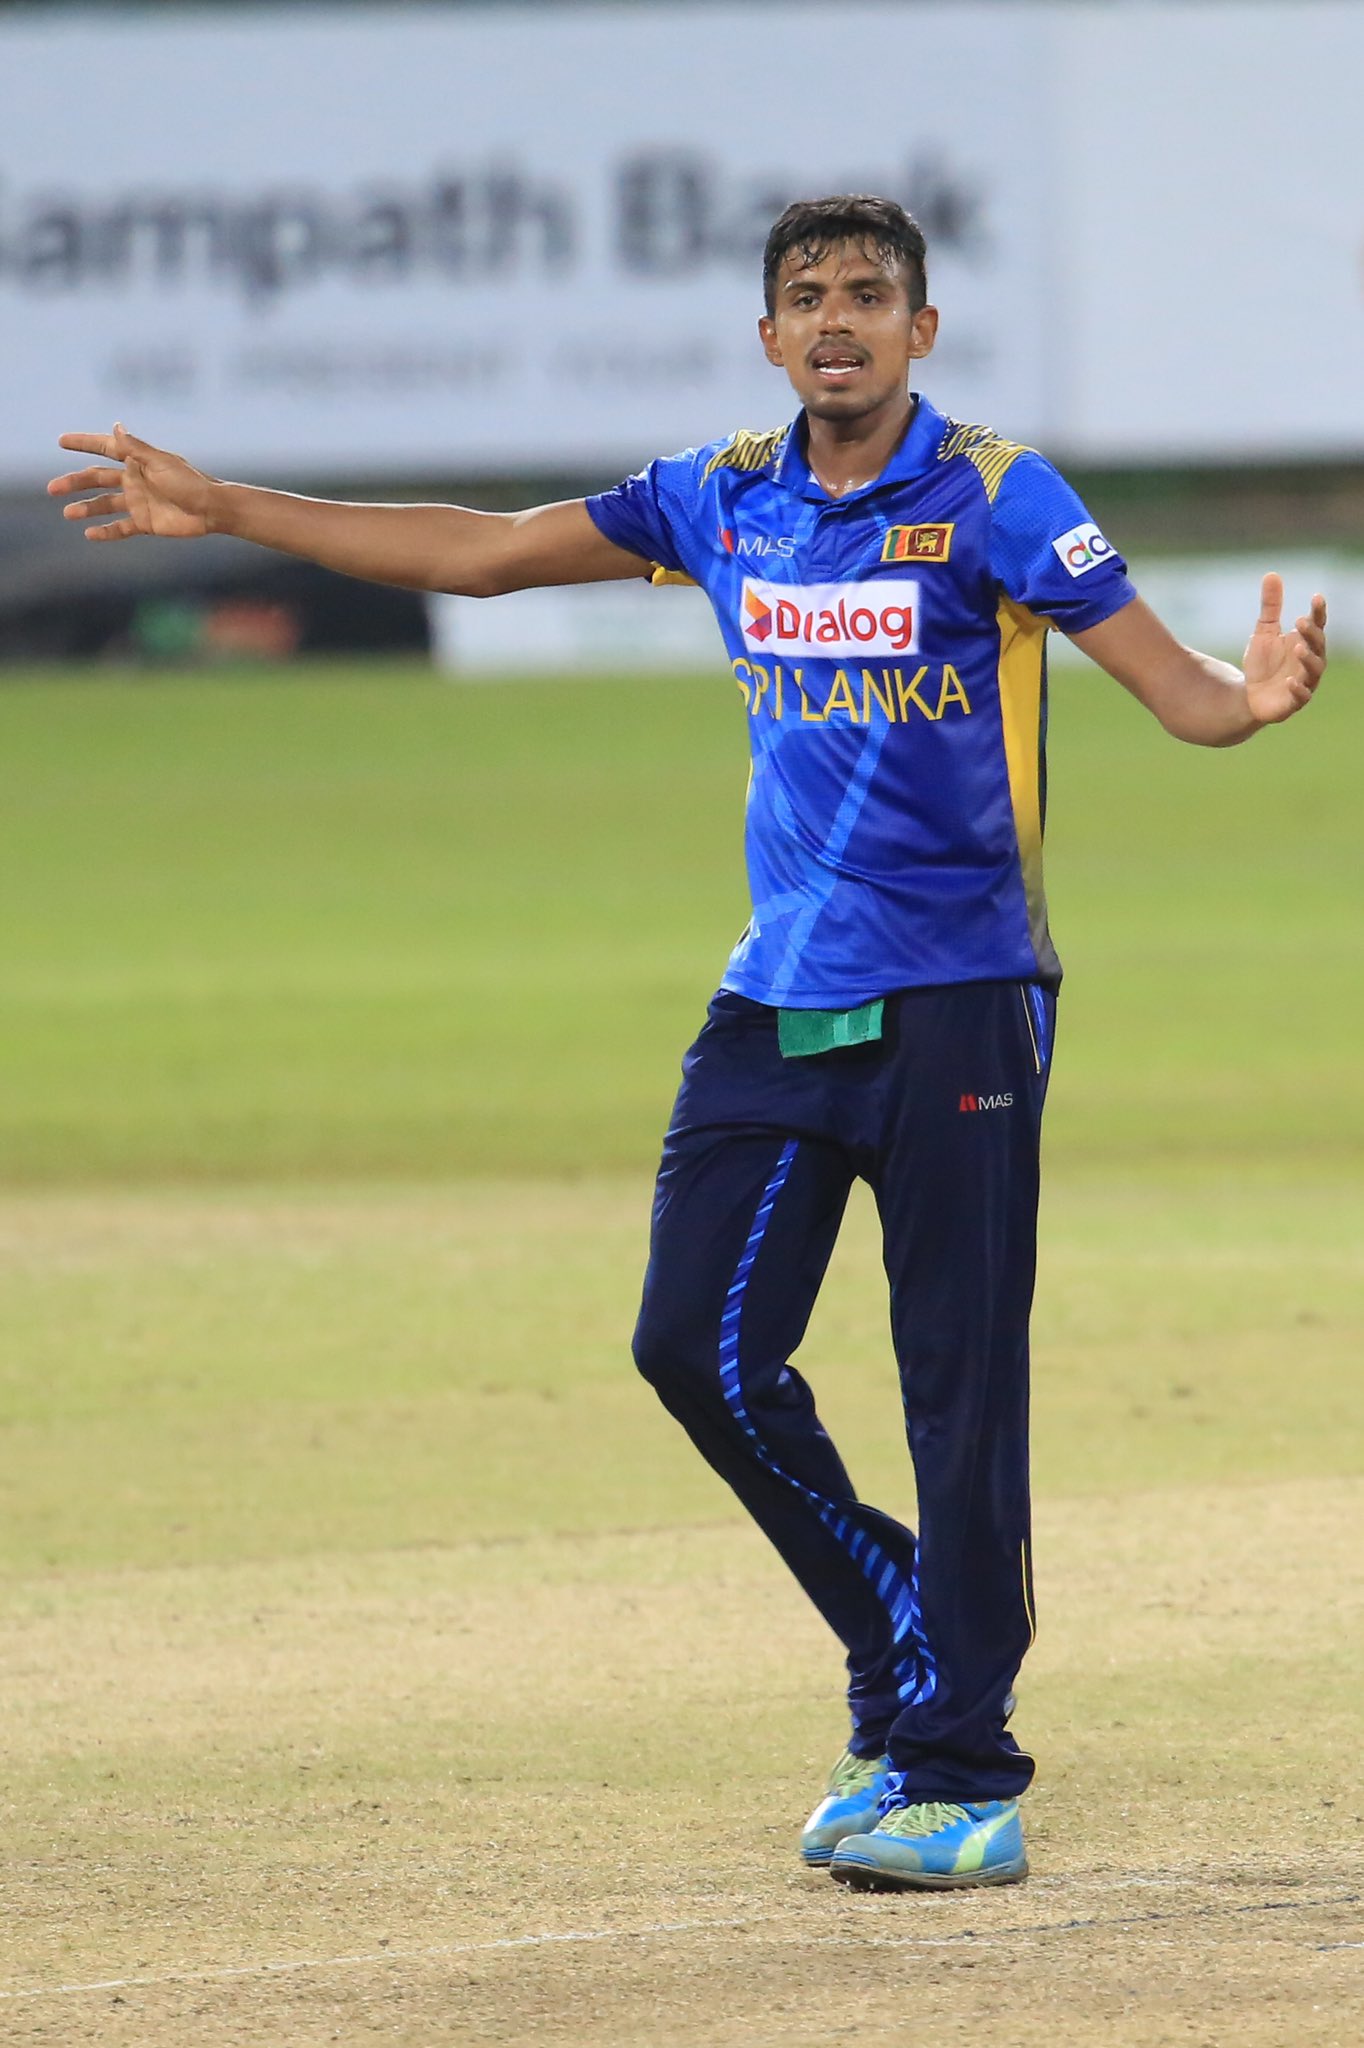 SA vs SL | Maheesh Theekshana's variations make him a difficult bowler to read, remarks Dasun Shanaka